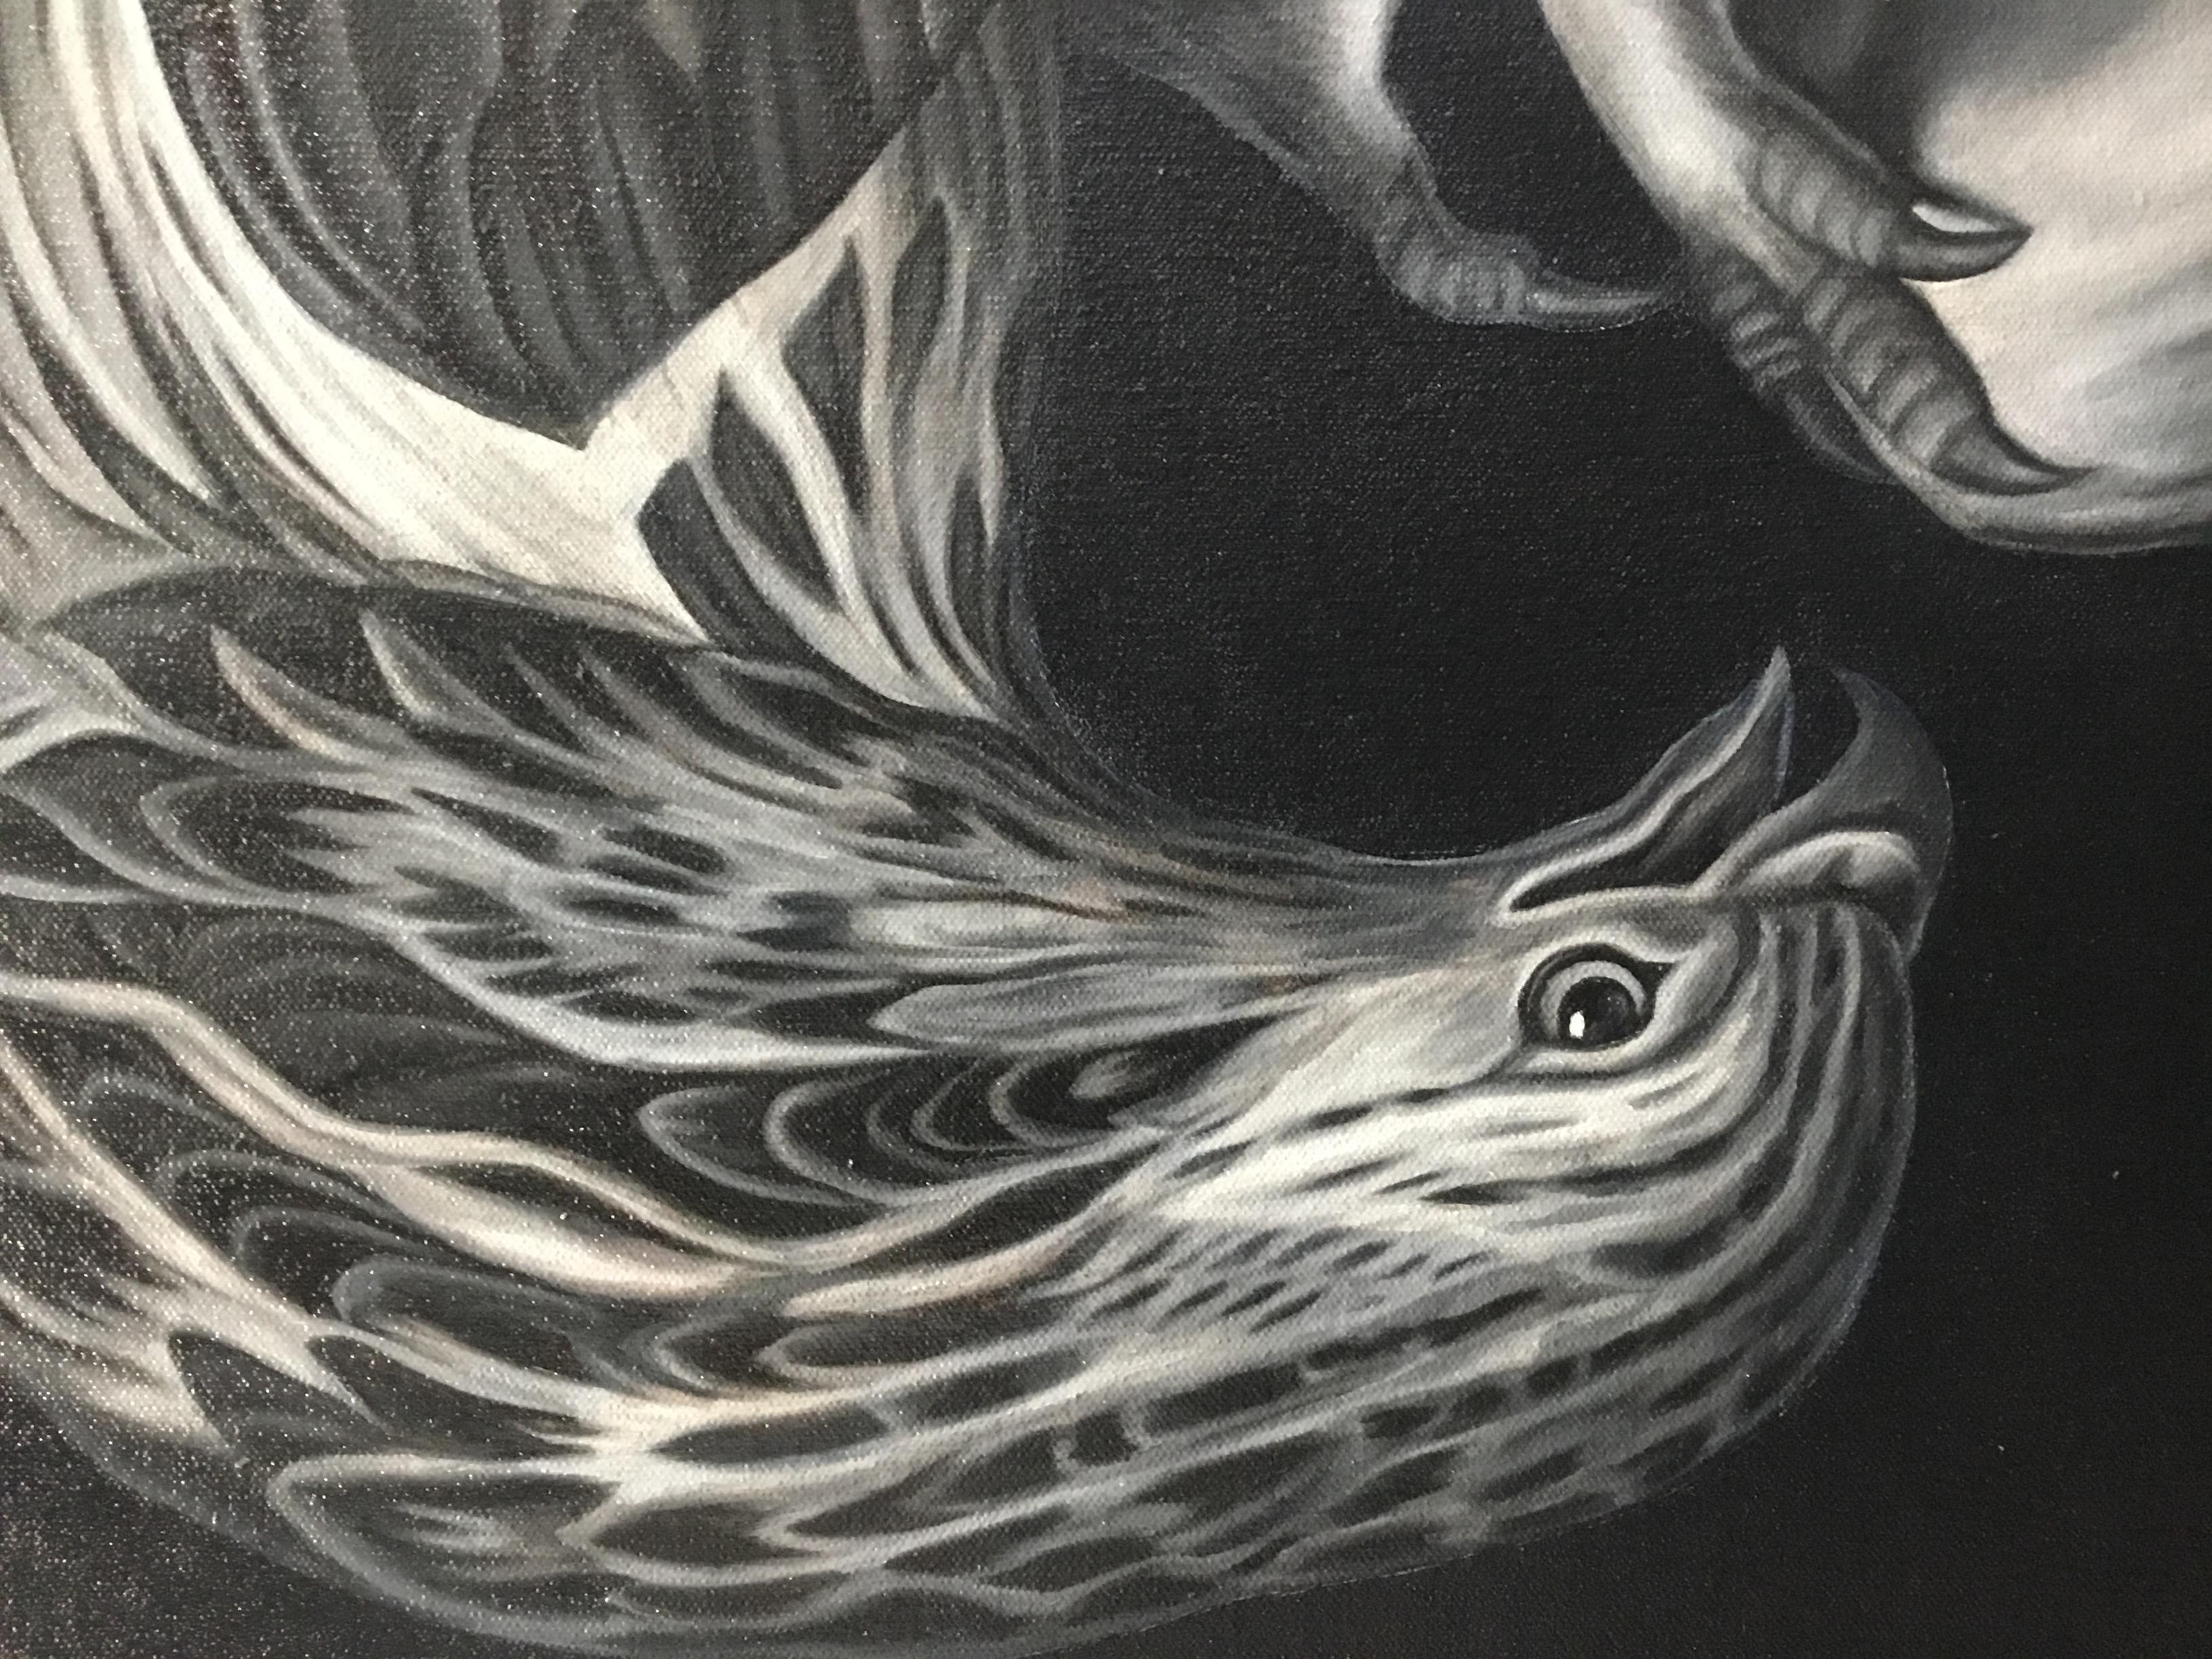 Reed entlehnt visuelle Fragmente aus der vorwiegend nordeuropäischen Kunst des siebzehnten und achtzehnten Jahrhunderts und zitiert die Künstler dieser Werke wie ein pflichtbewusster Gelehrter. Sie kopiert sorgfältig ausgewählte Motive - einen Vogel